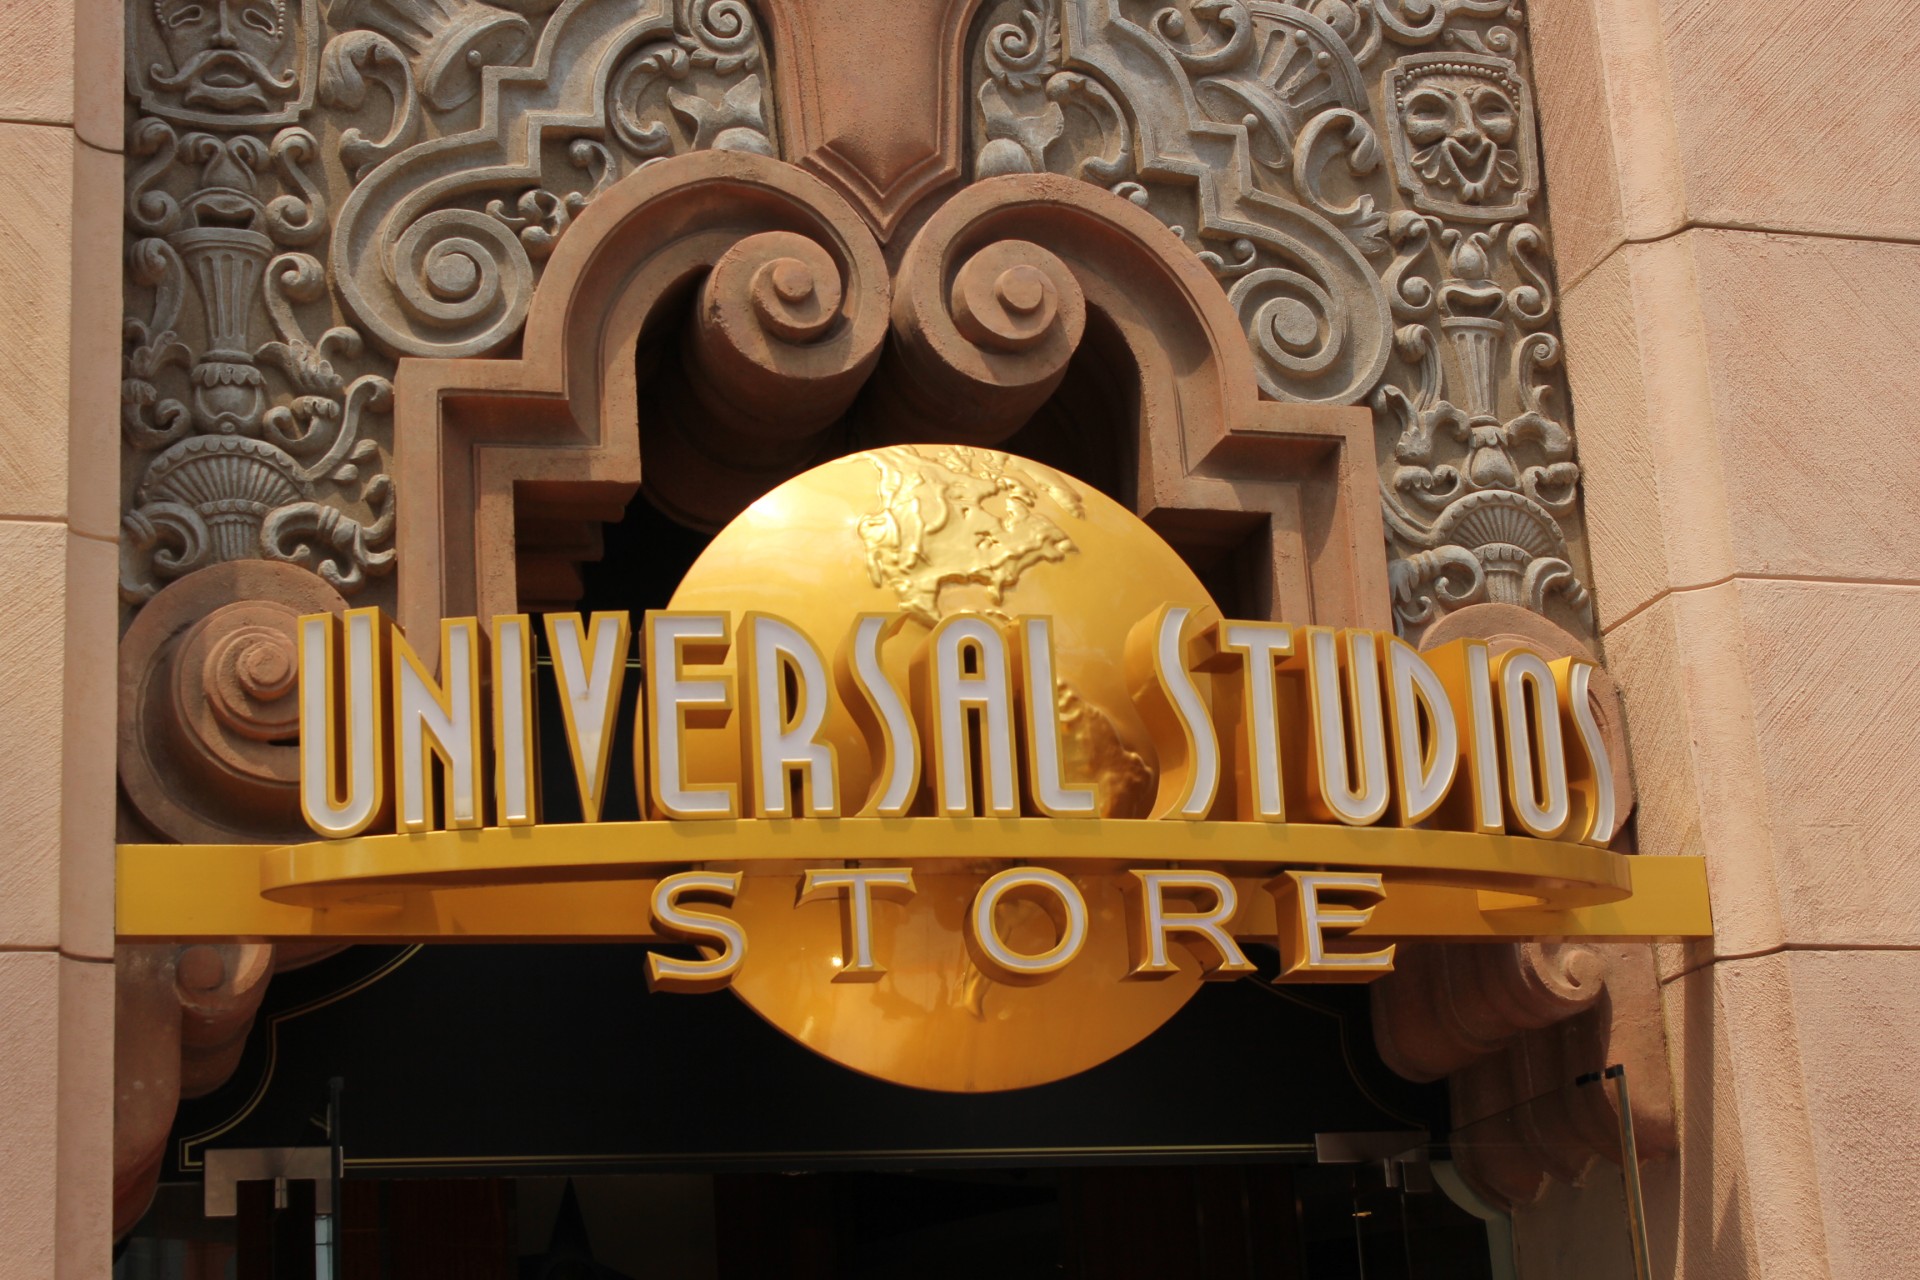 universal studio store universal studio store free photo